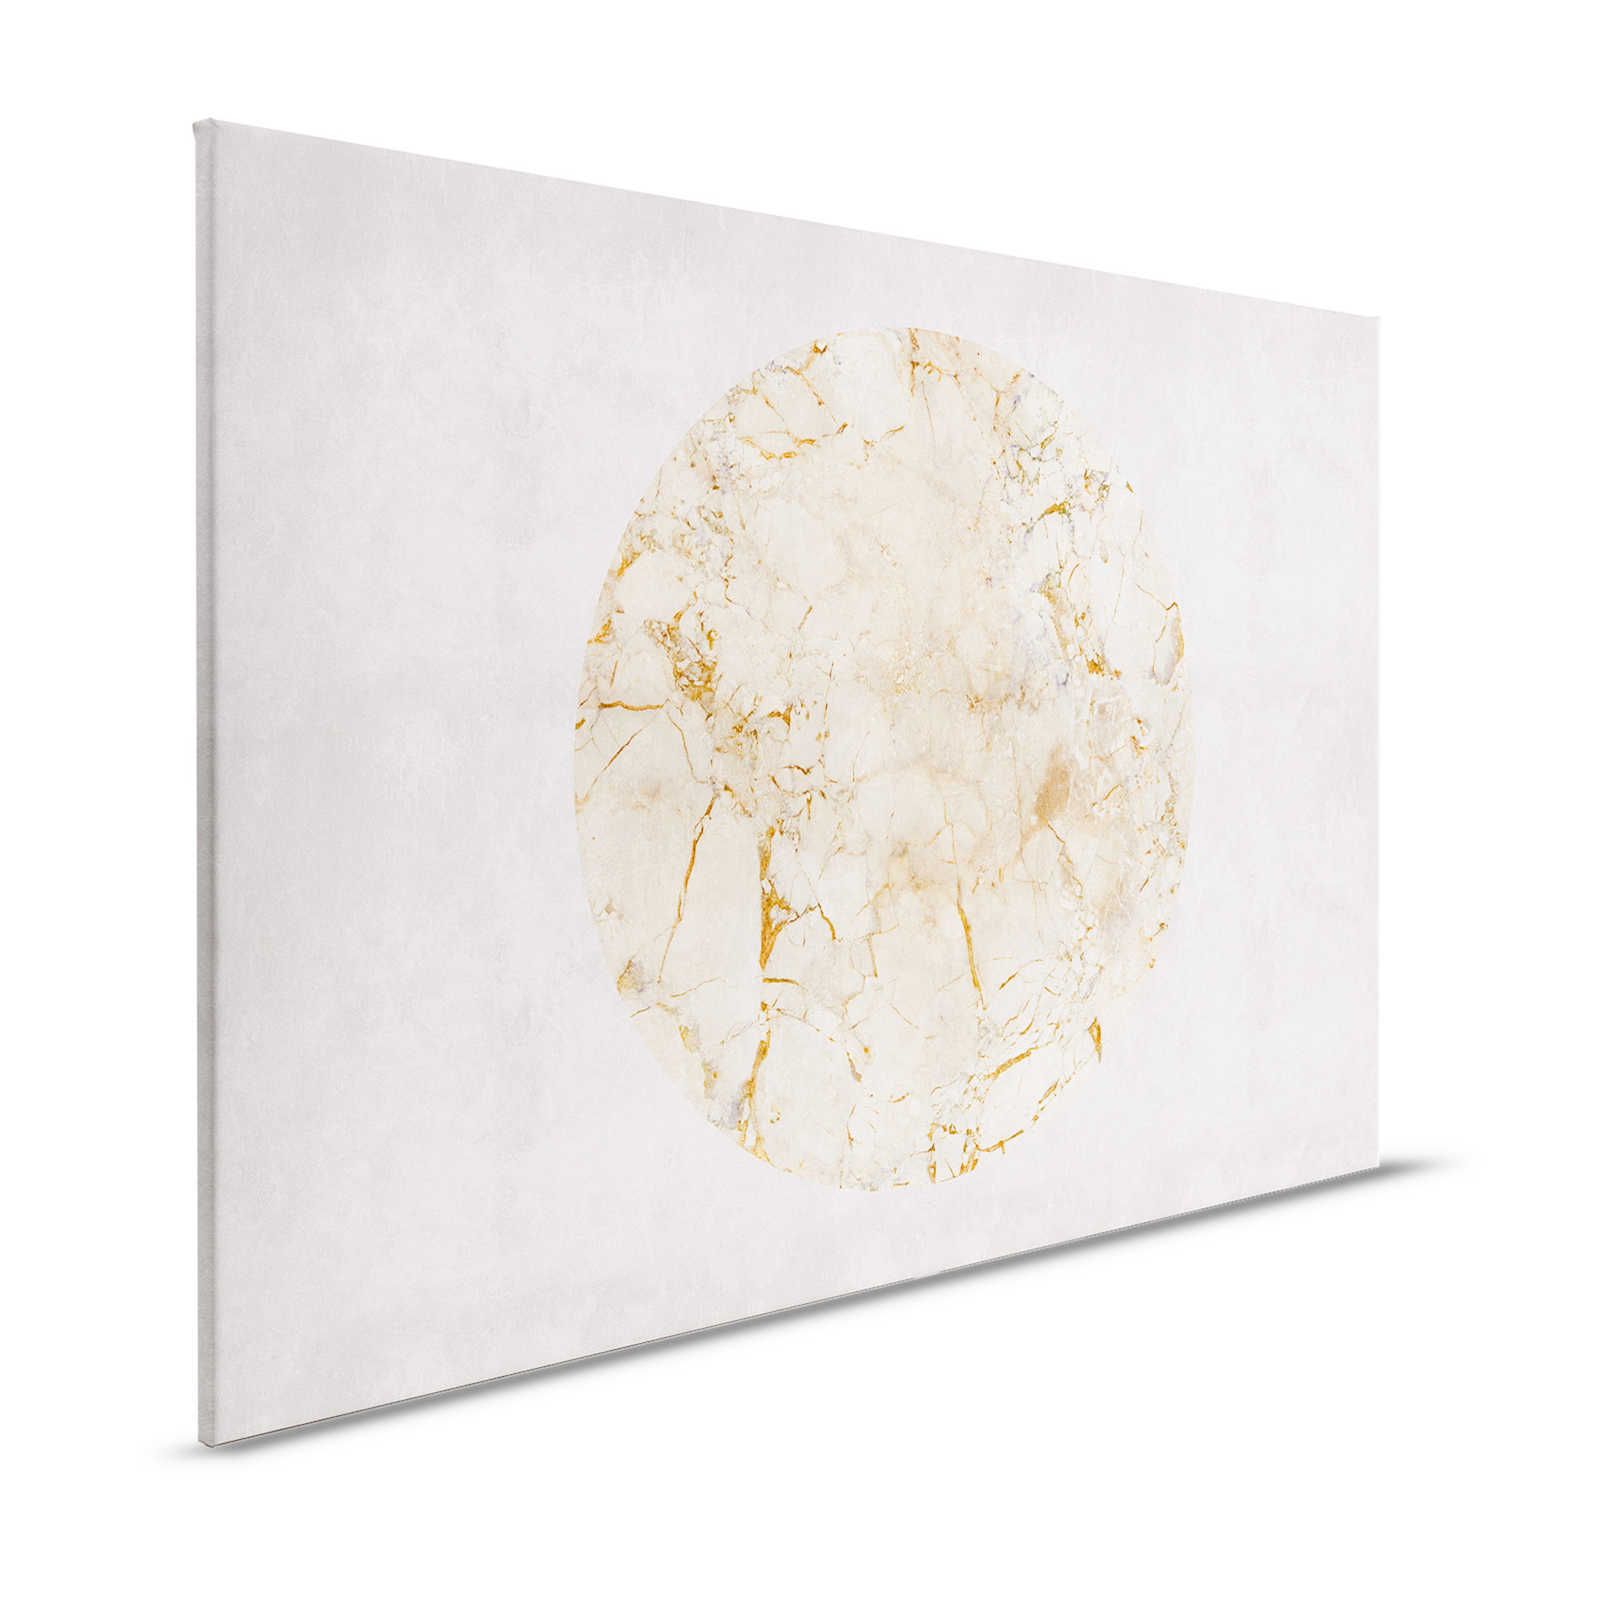 Venus 2 - Pittura su tela di marmo con motivo oro e aspetto pietra - 1,20 m x 0,80 m
